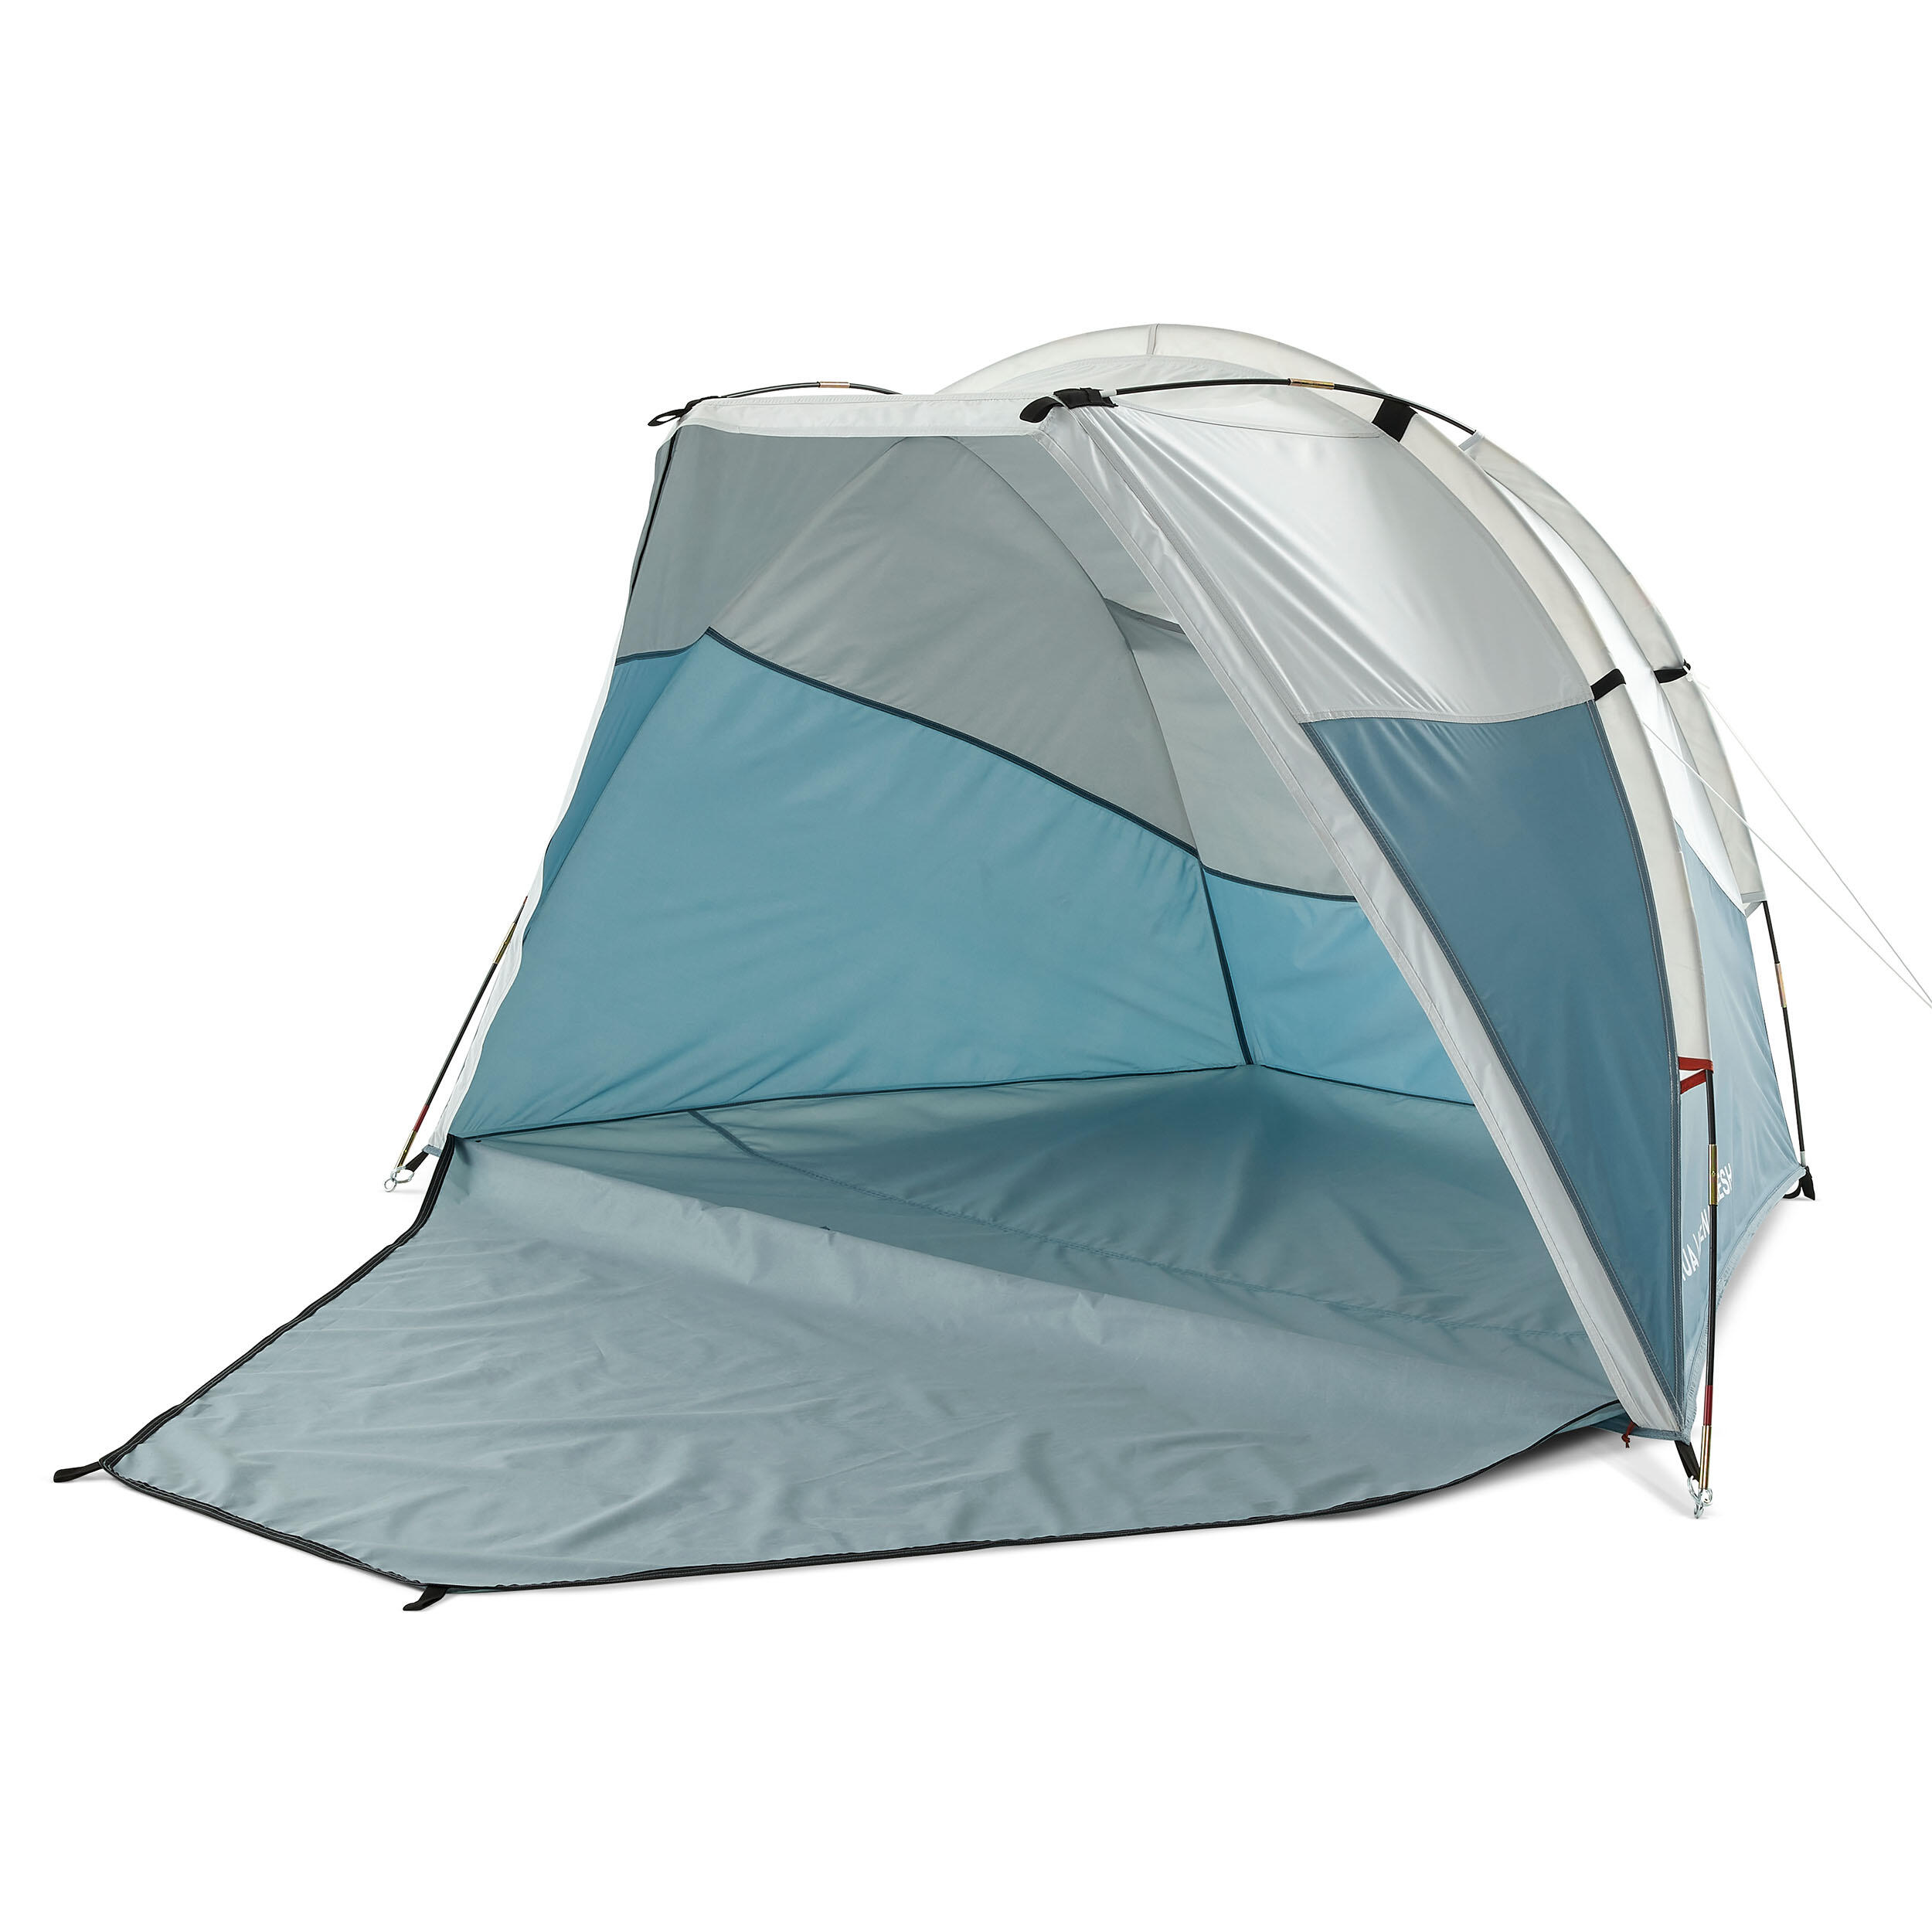 Adăpost cu structură cu bețe camping Arpenaz 0 XL Fresh Compact 2 Adulți decathlon.ro